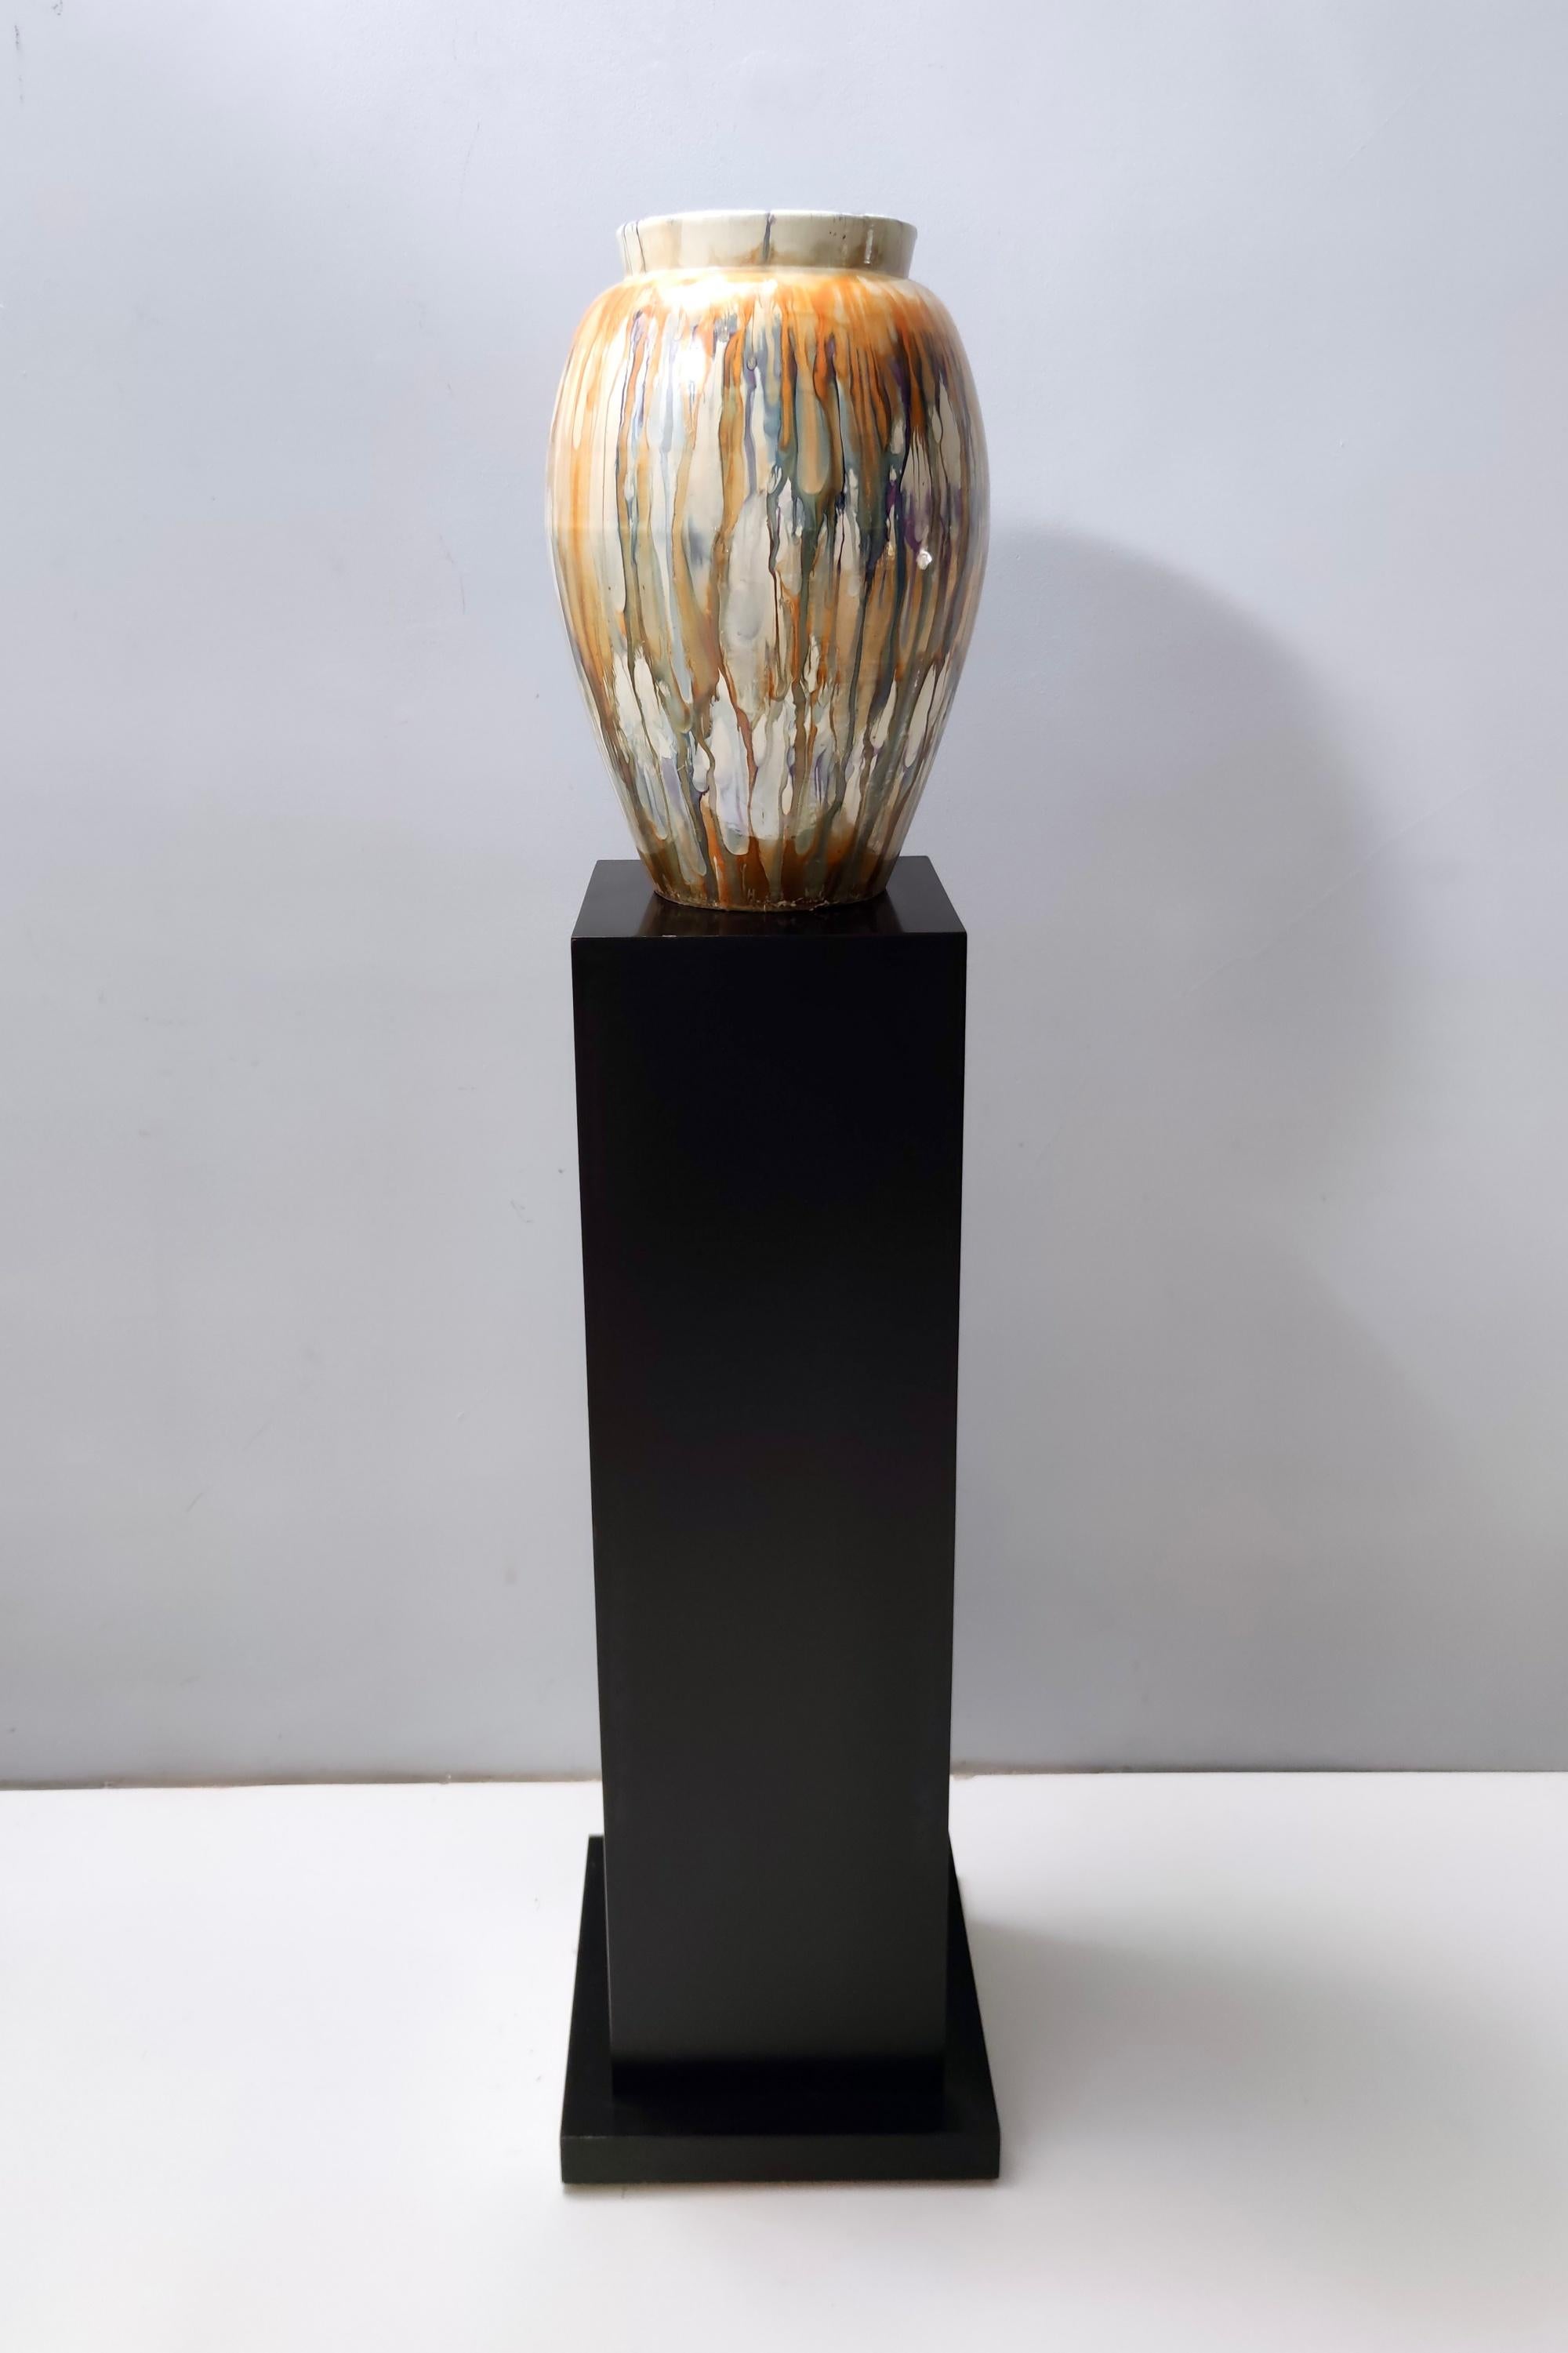 Fabriqué en Italie, années 1940 - 1950.
Ce vase en faïence laquée est marqué par Pasquinucci, Le ceramiche di Pisa. 
Il s'agit d'une pièce d'époque, qui peut donc présenter de légères traces d'utilisation, mais qui peut être considérée comme étant